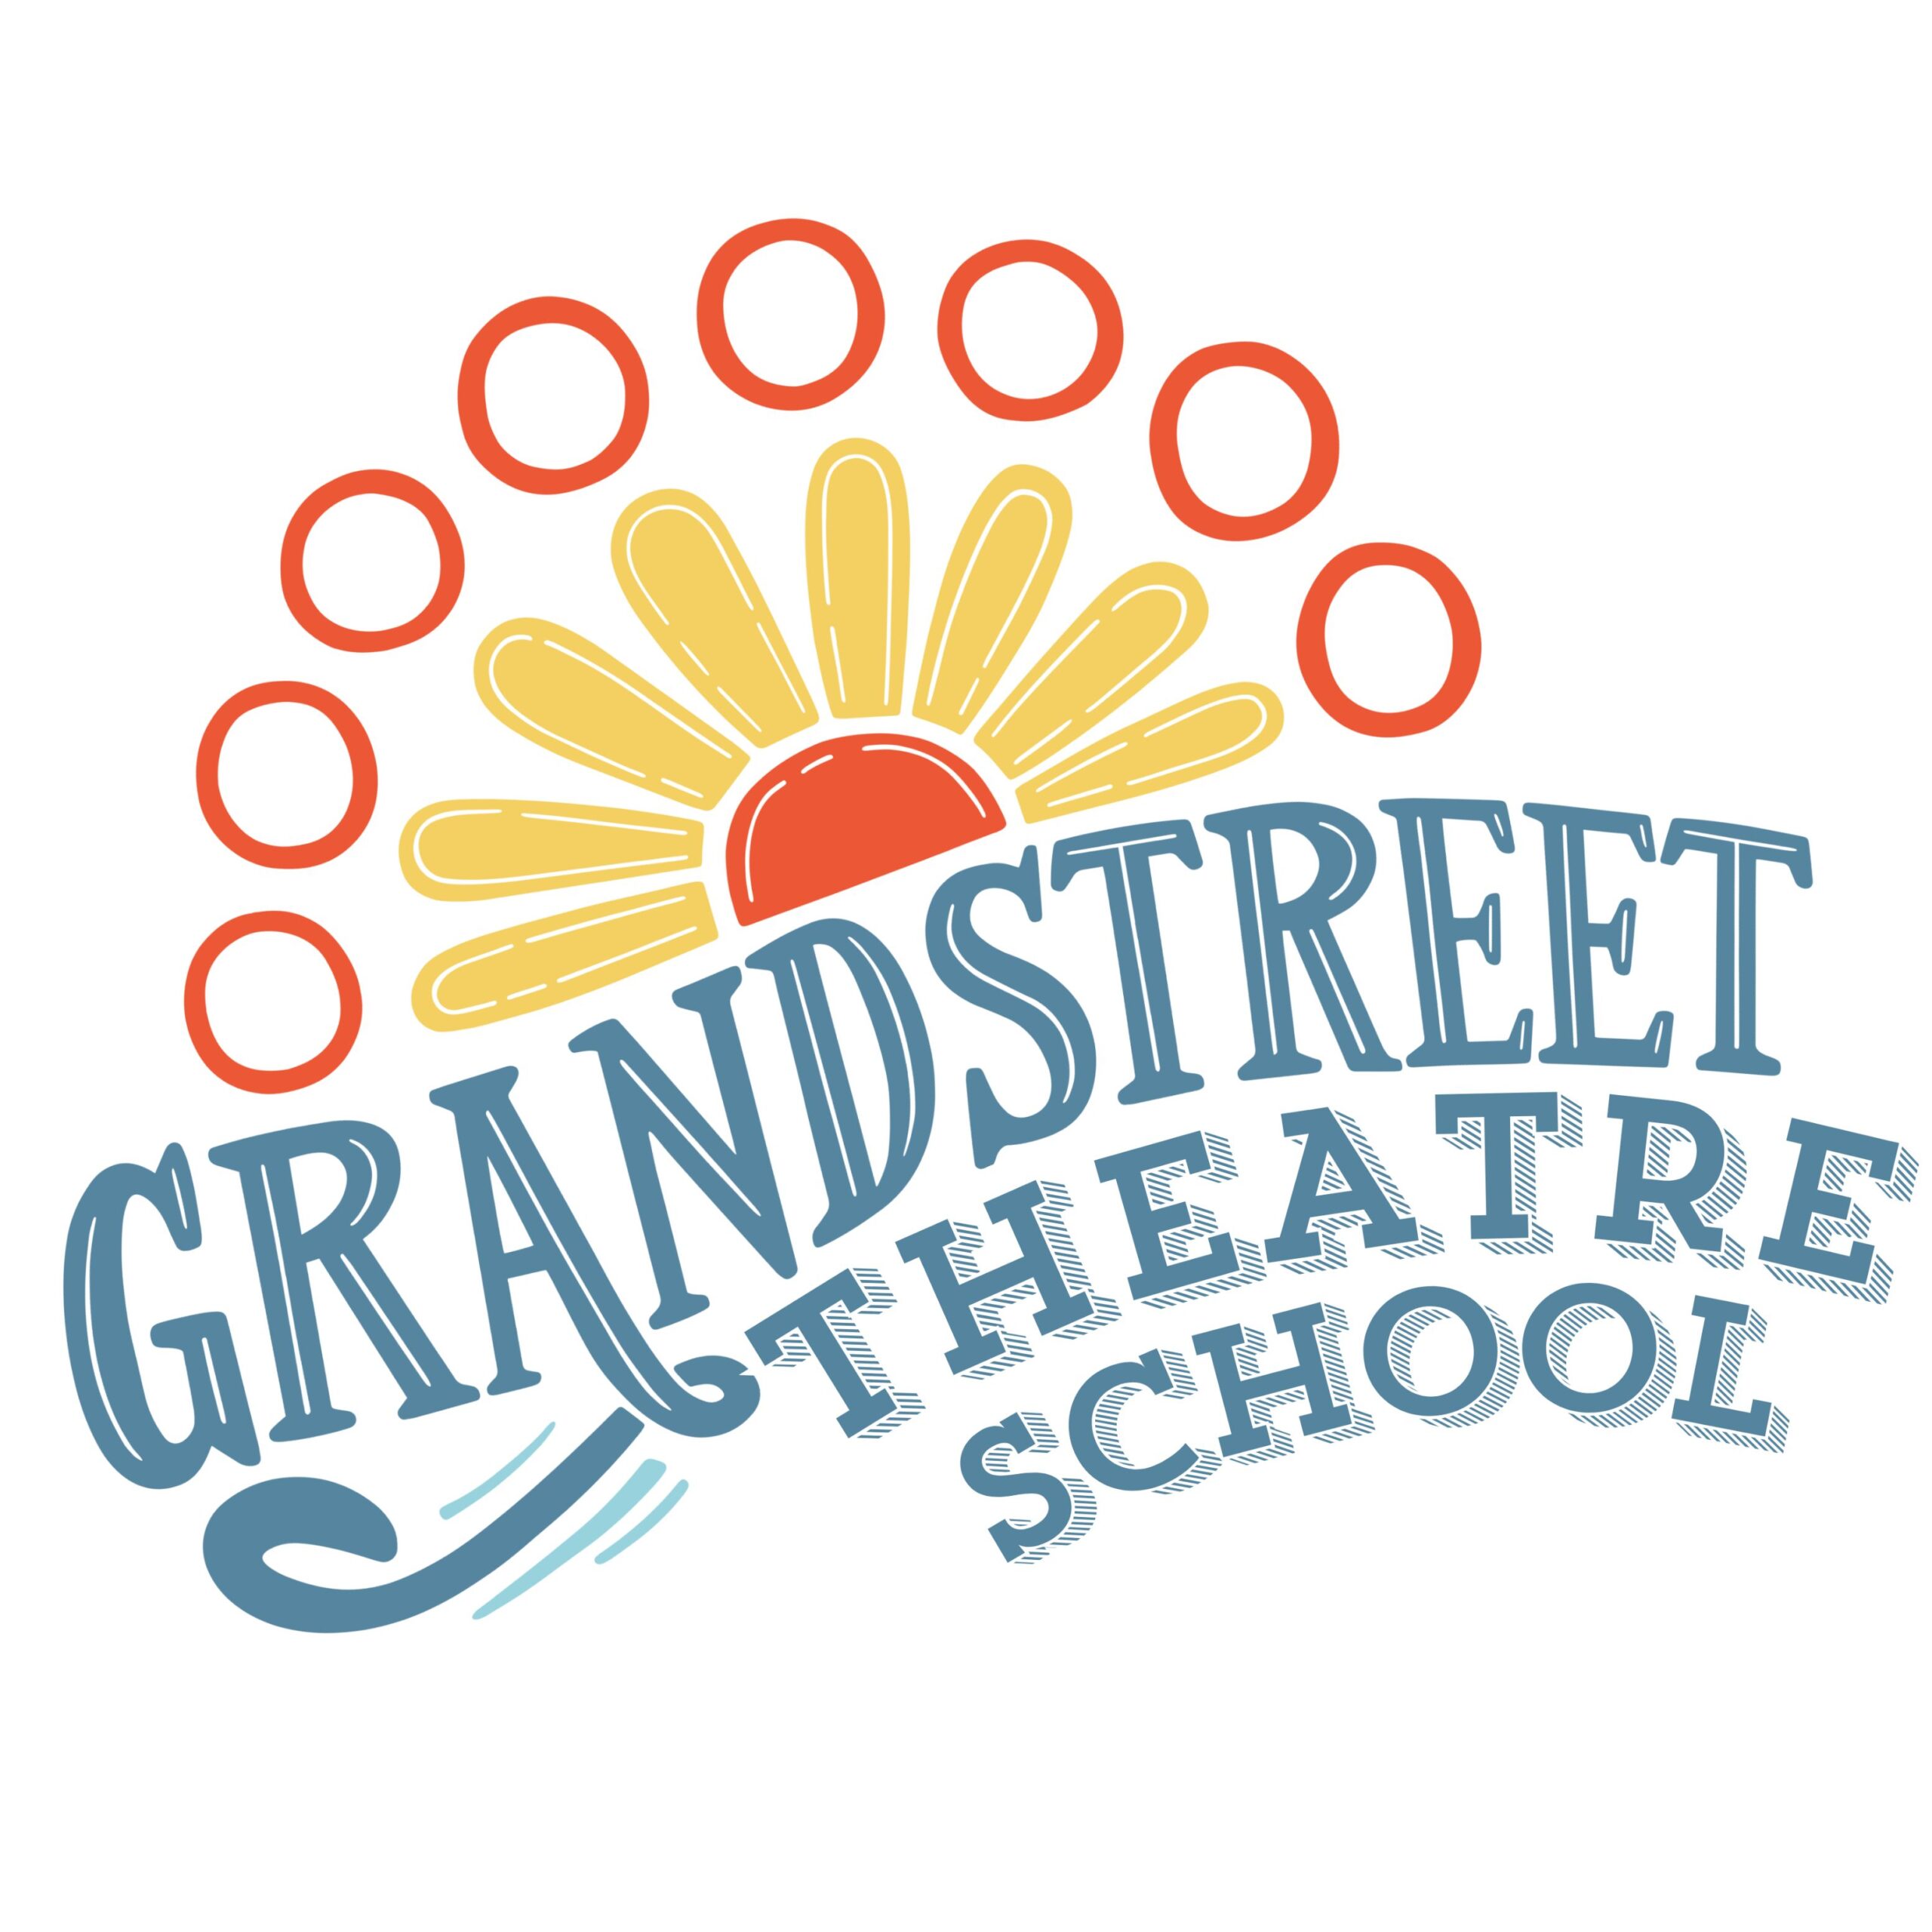 Grandstreet Theatre School Logo